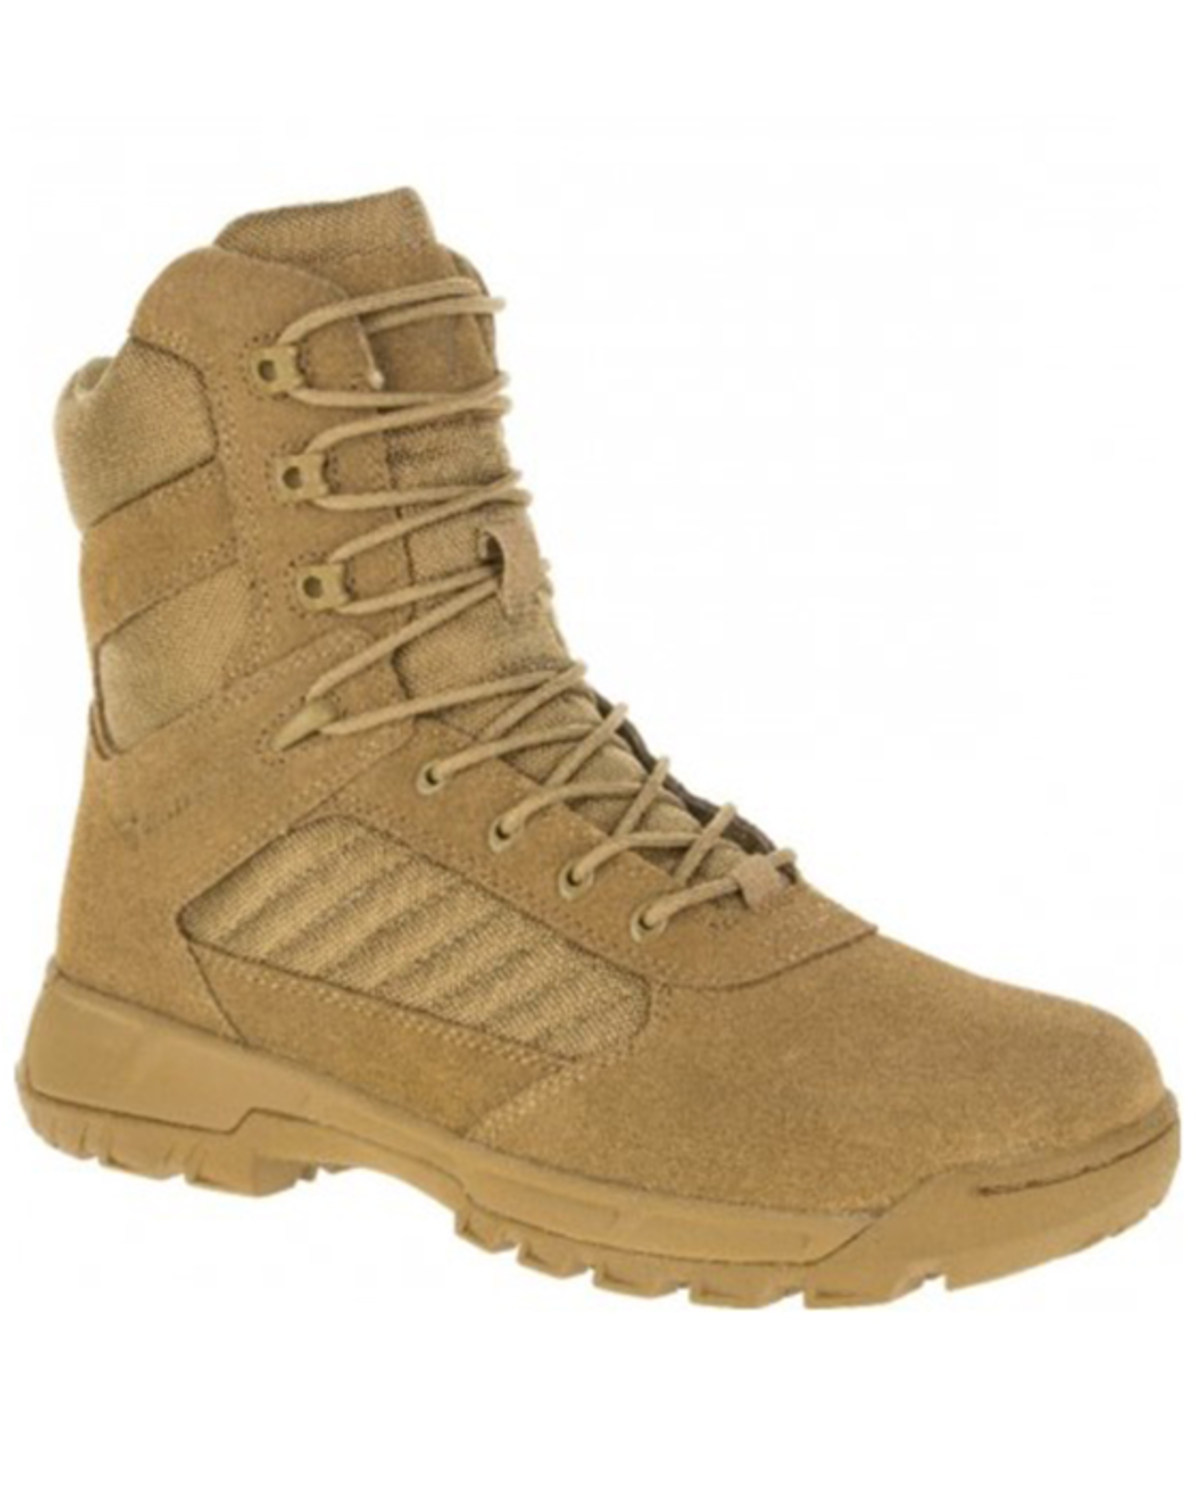 Bates Men's Tactical Sport 2 Military Boots - Soft Toe